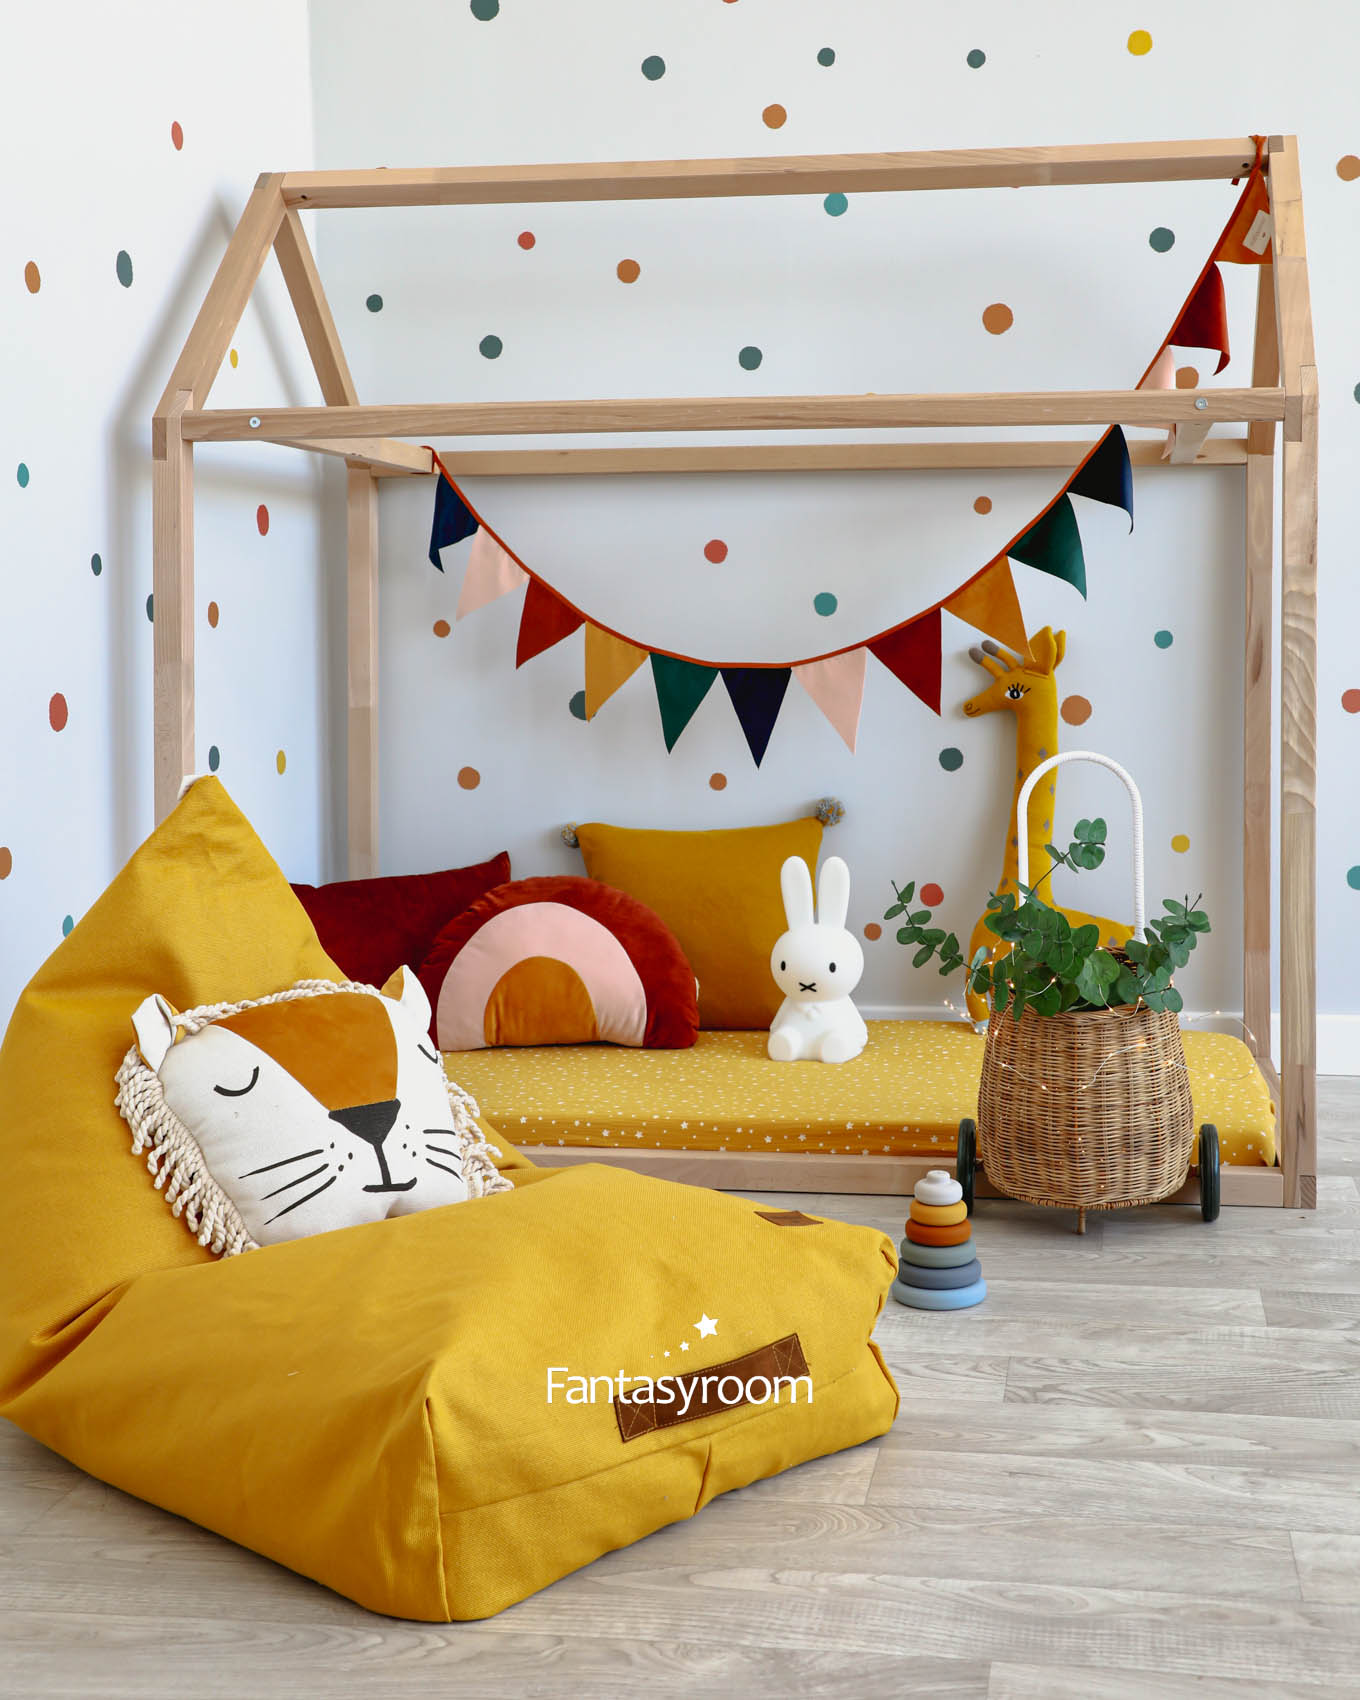 Hausbett als Spielecke im Kinderzimmer mit gelber und bunter Deko